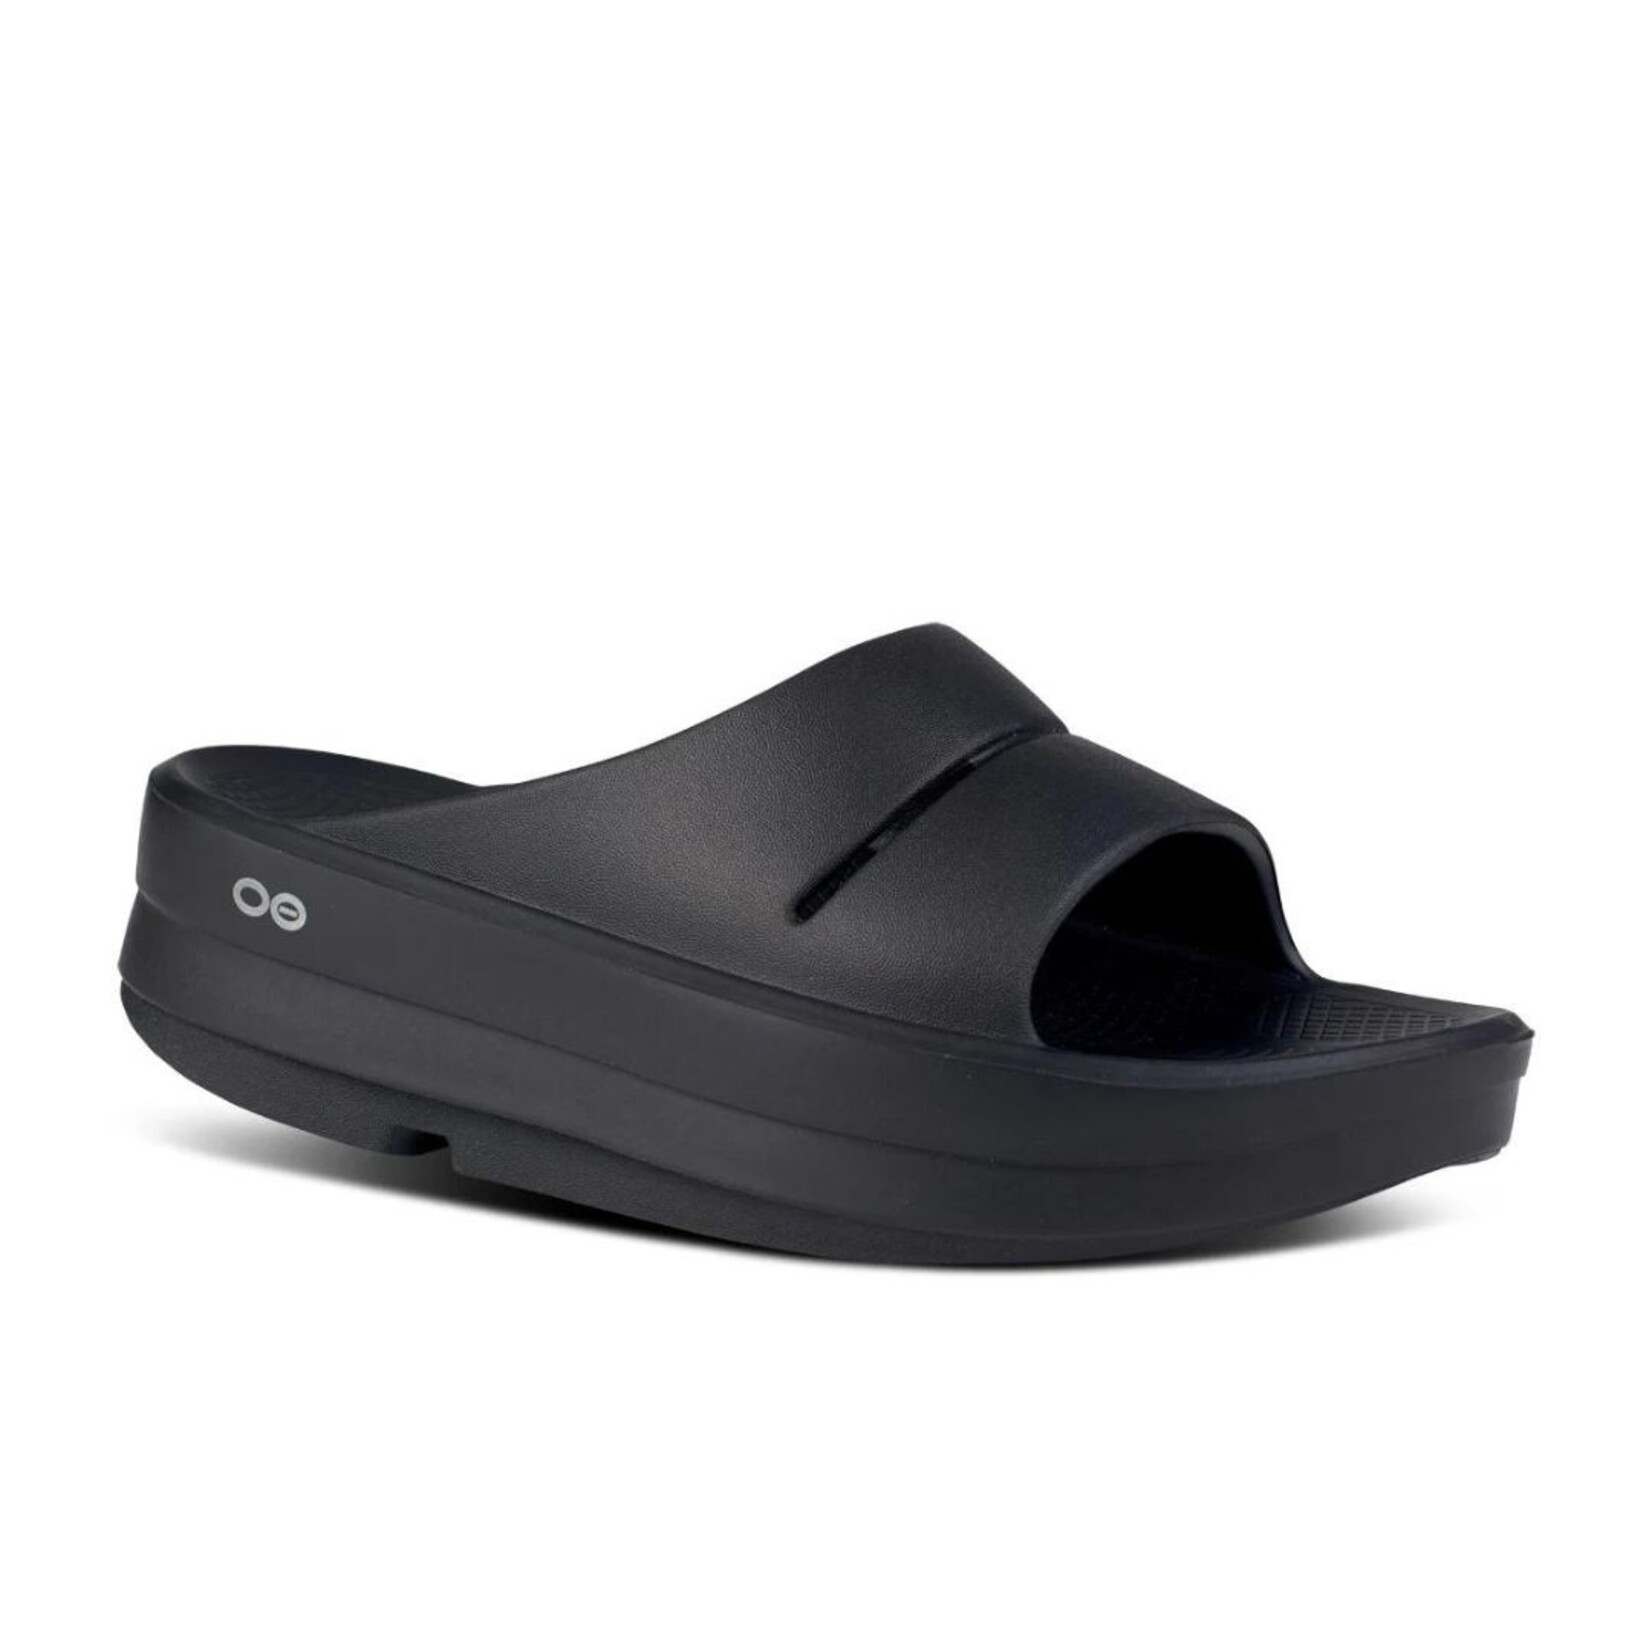 Oofos Oofos 1110 OOmega OOahh Slide Women's Sandals